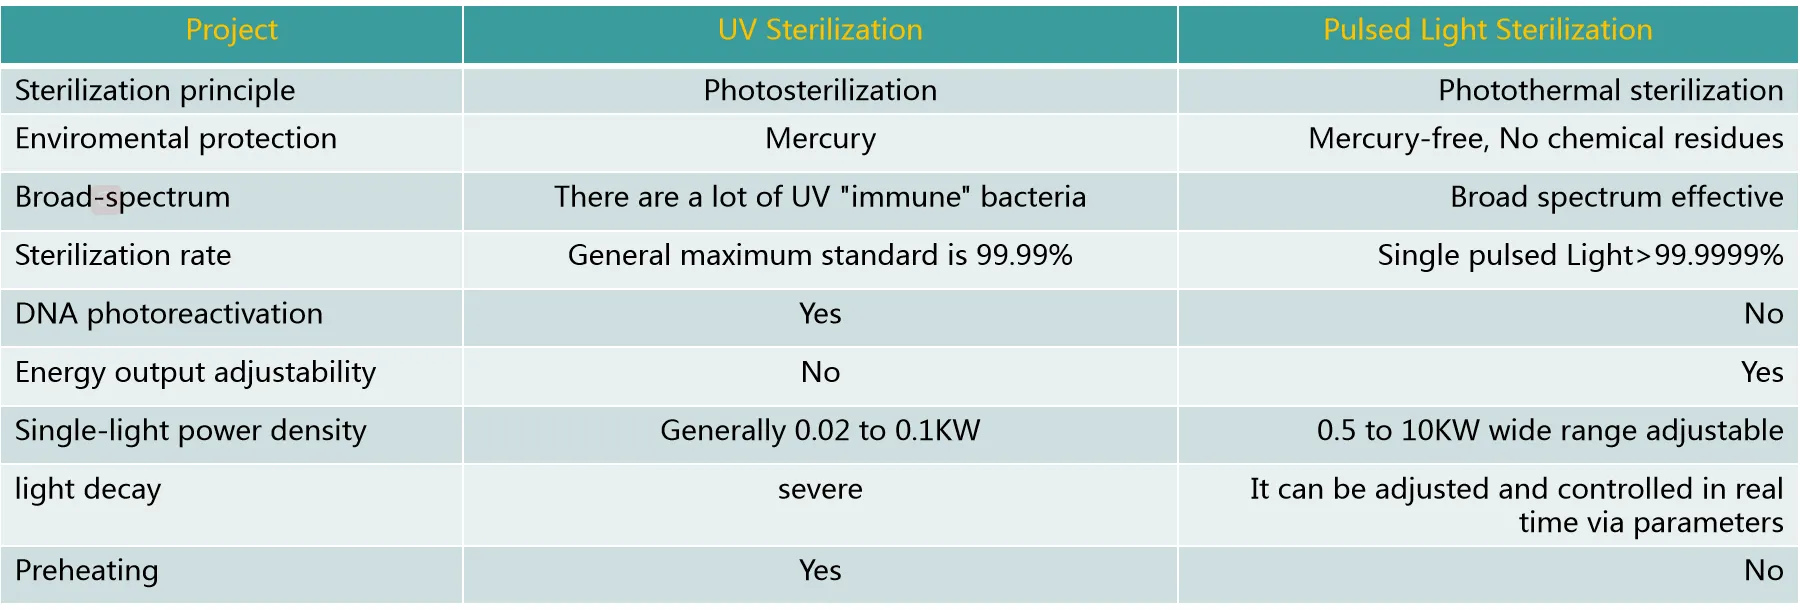 Pulsed light and UV Sterilization Comparison